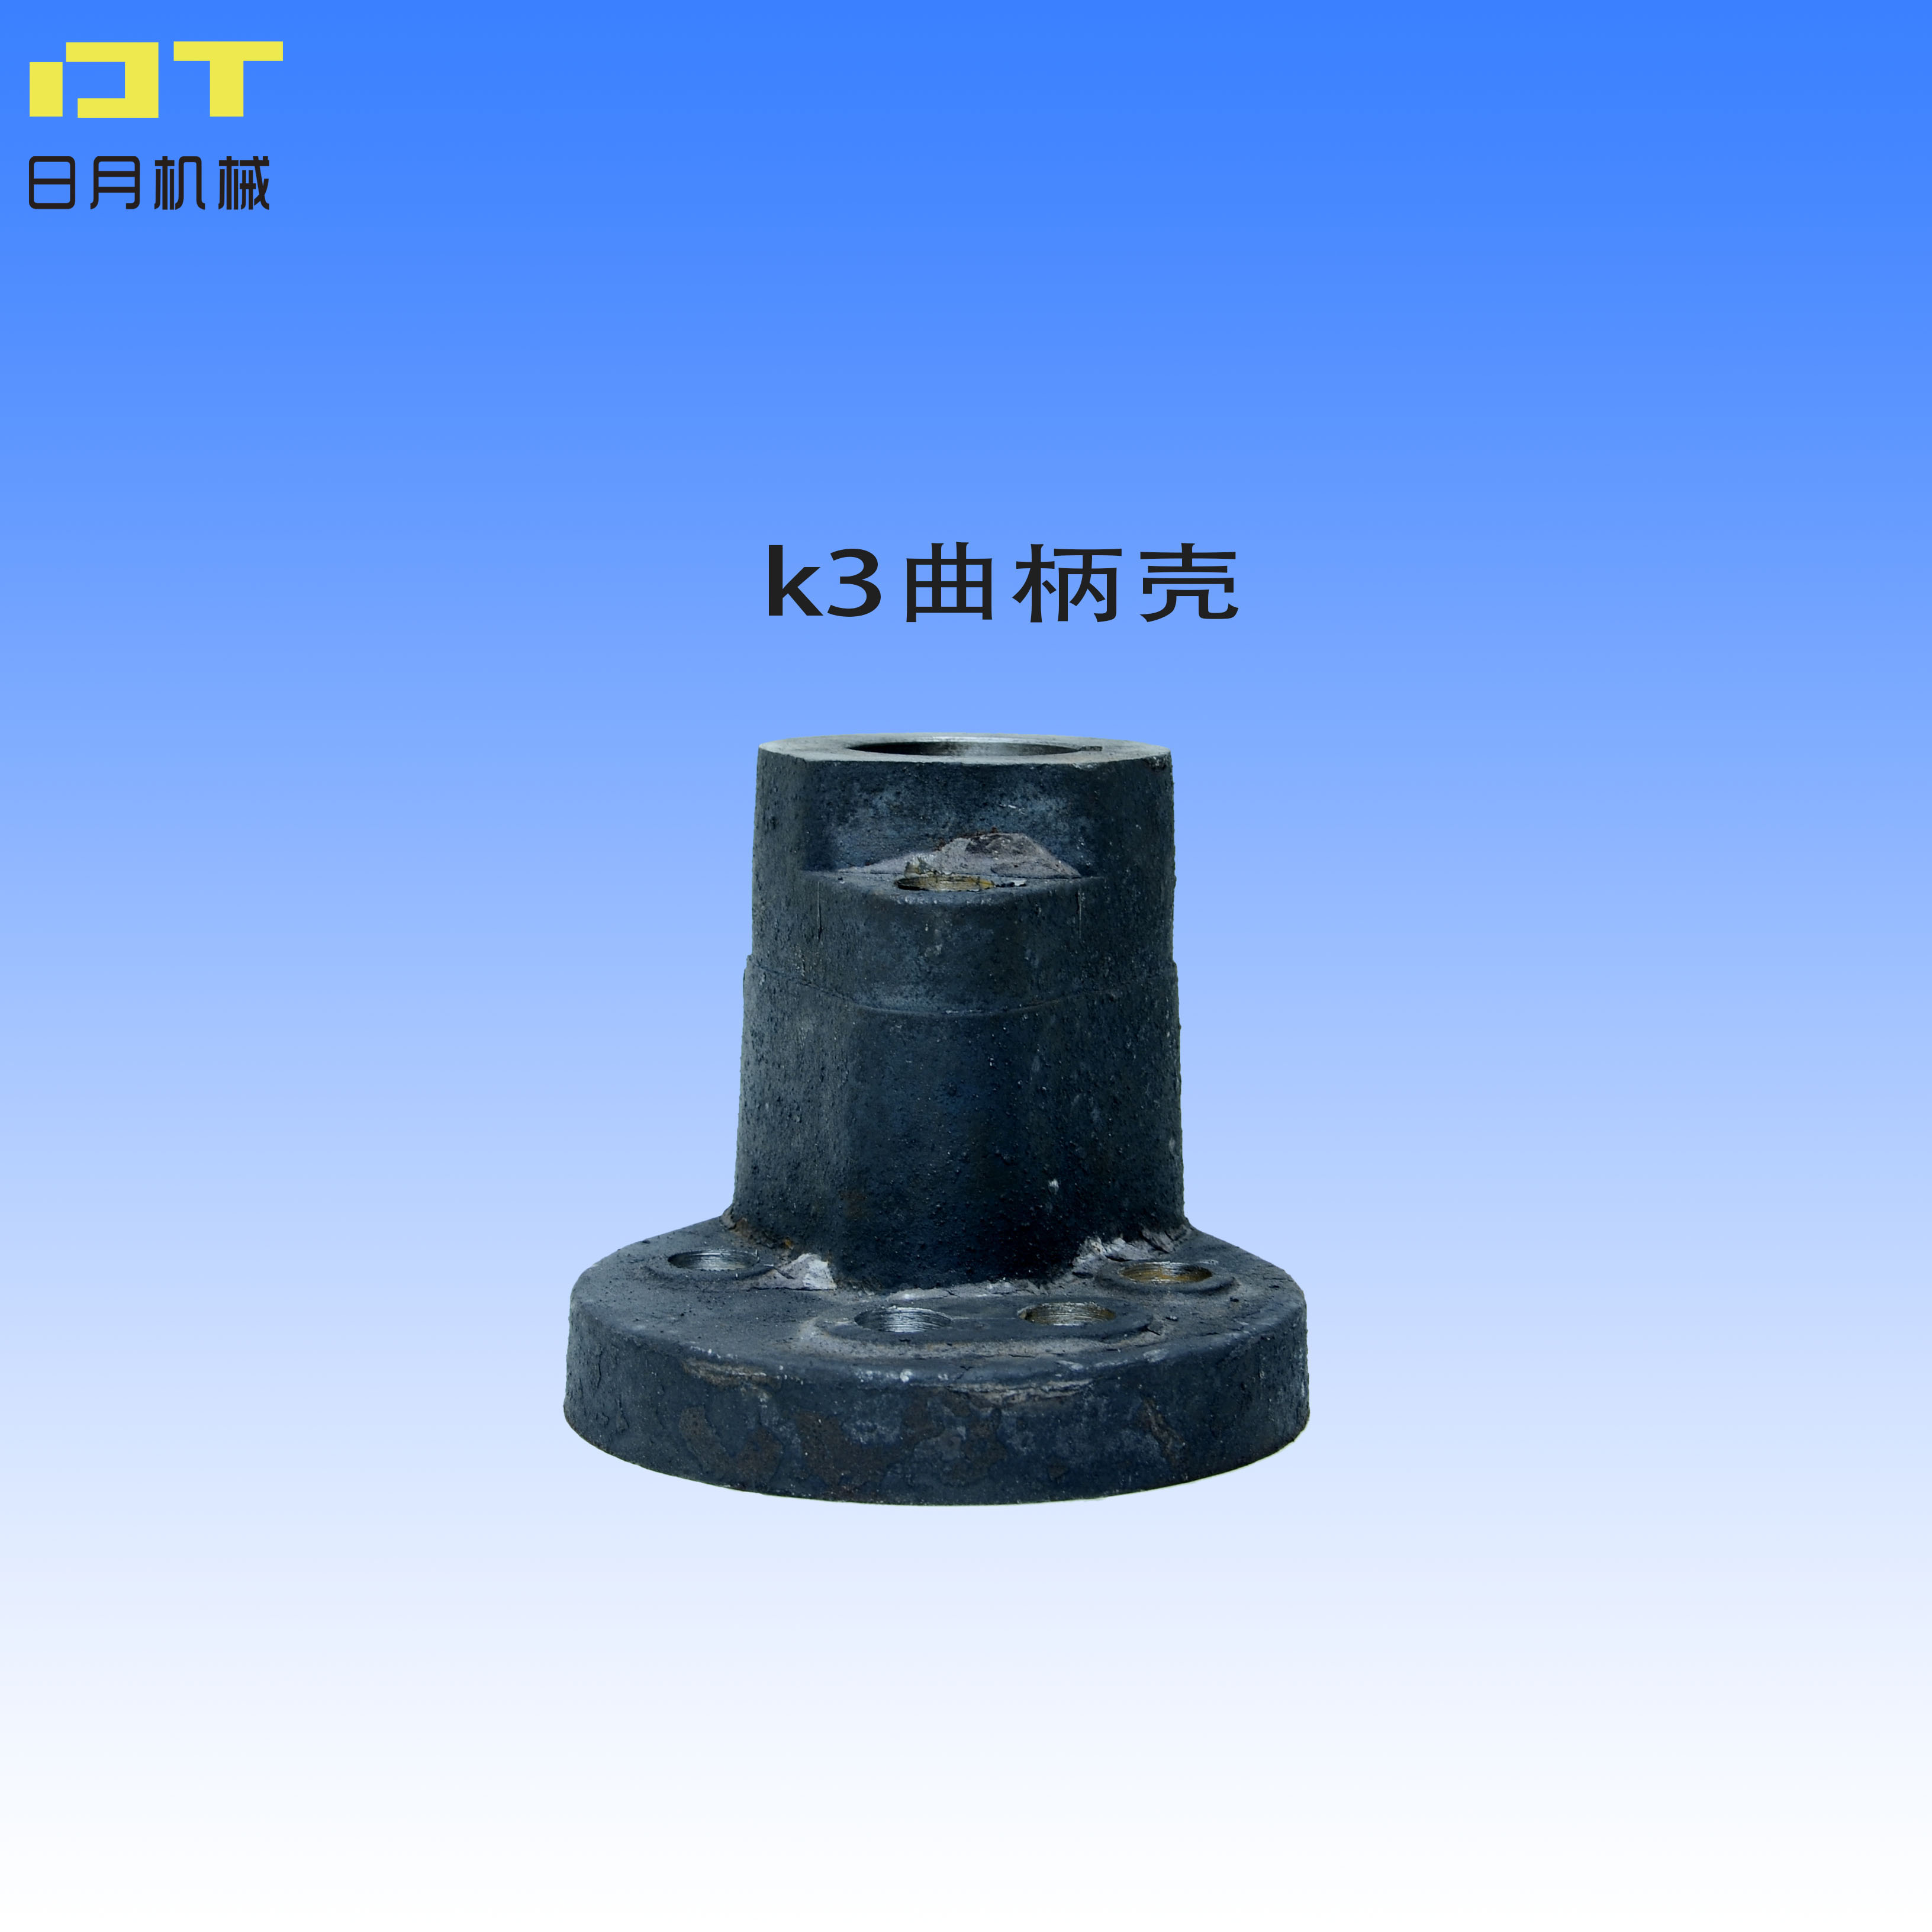 K2 K3曲柄壳曲柄偏心轮k型往复式给煤机曲柄壳 给煤机 曲柄壳曲耳